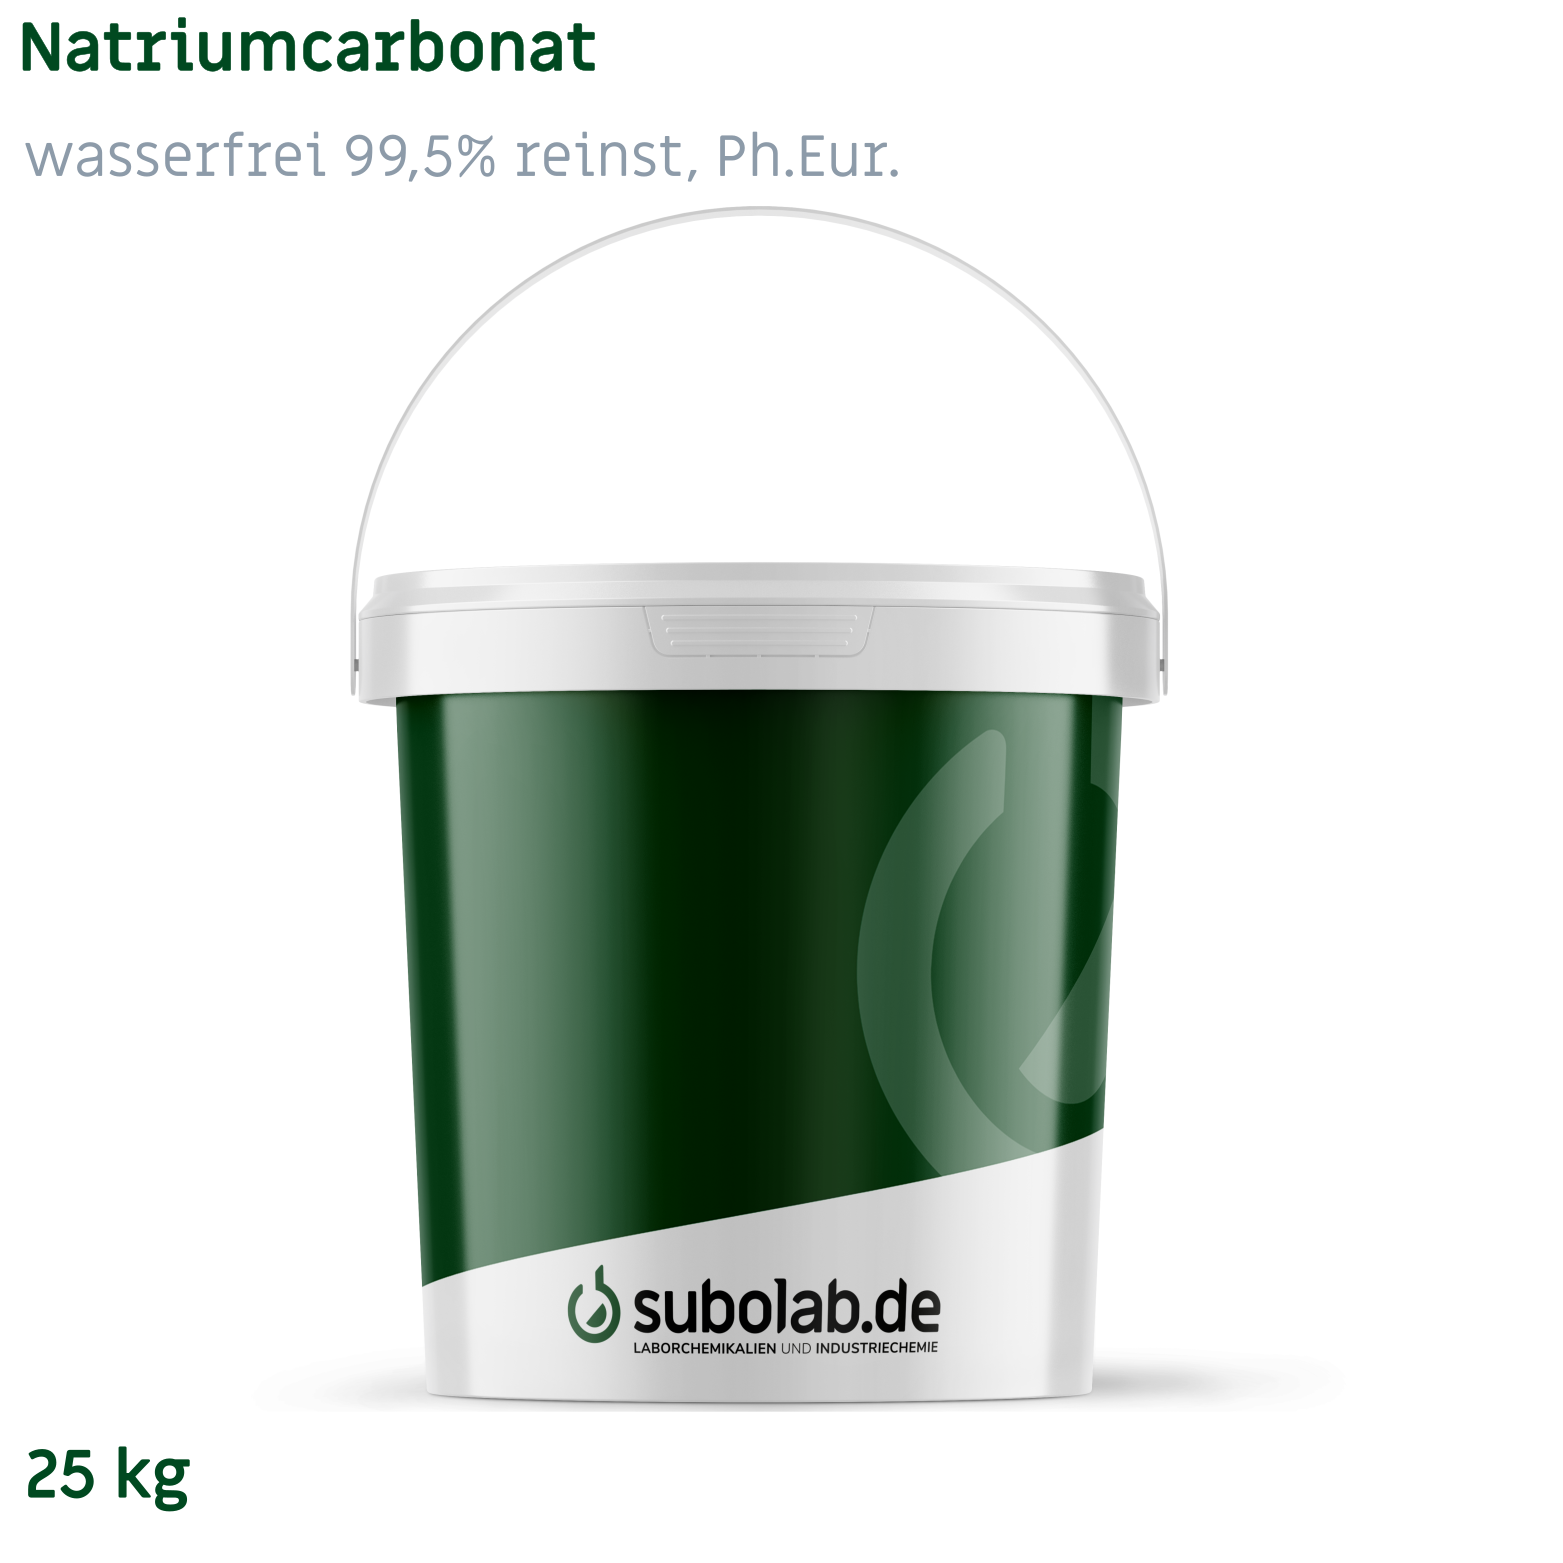 Bild von Natriumcarbonat - wasserfrei 99,5% reinst, Ph.Eur. (25 kg)